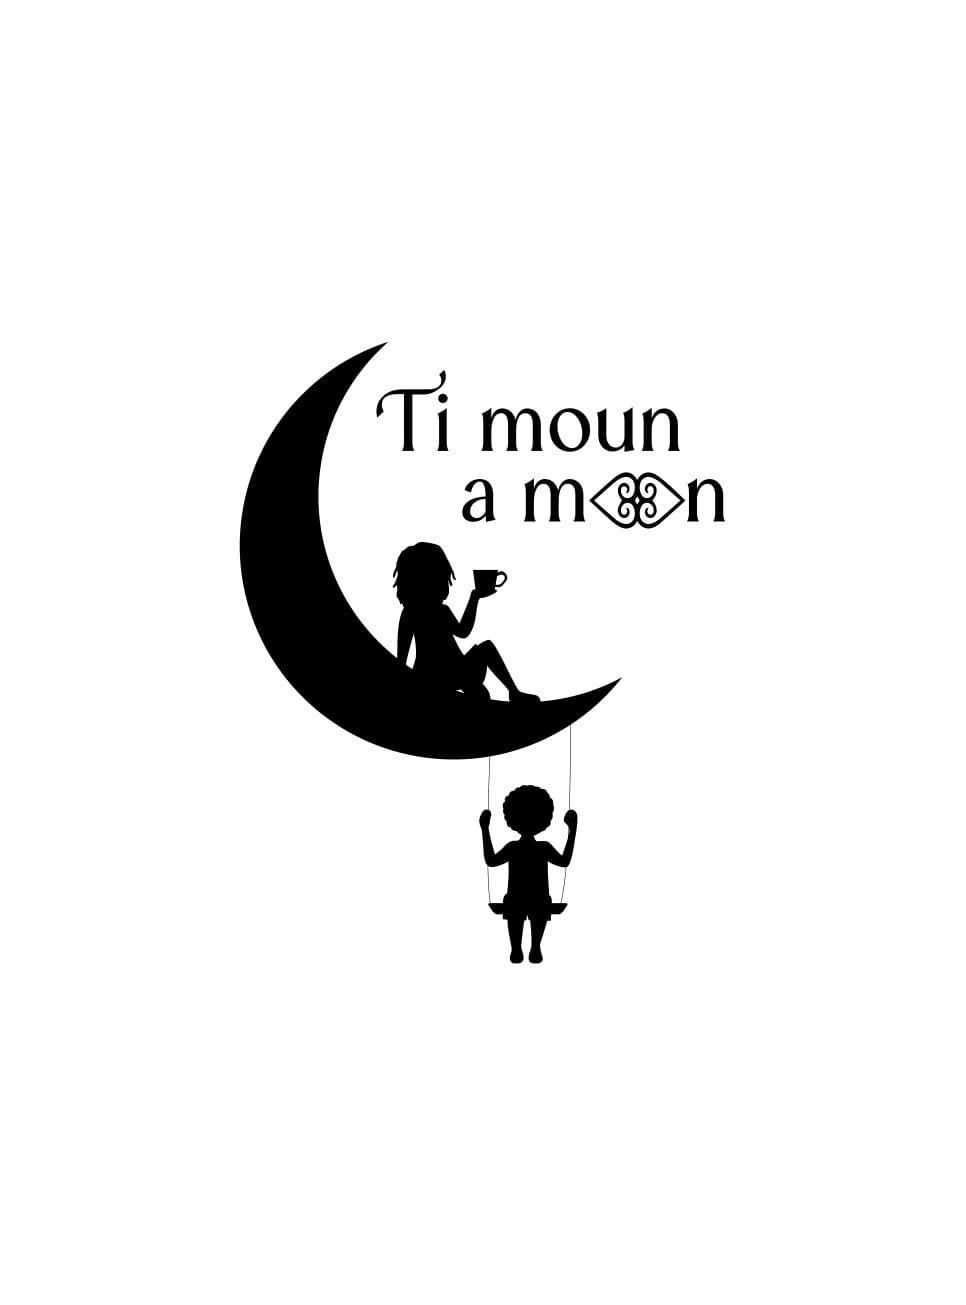 Timoun a moon